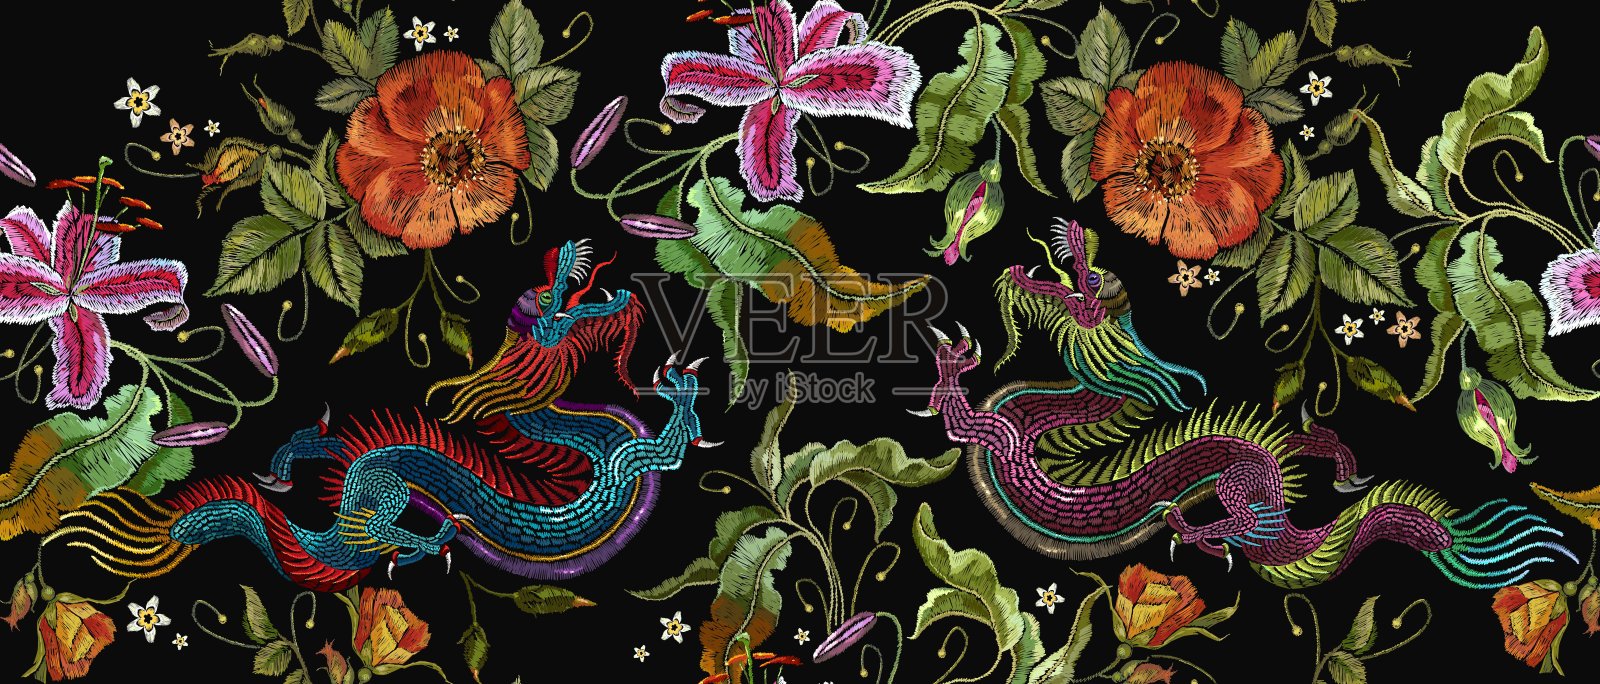 刺绣两种中国龙和玫瑰花朵无缝图案。古典刺绣亚洲龙和美丽的红玫瑰矢量。艺术龙t恤设计。服装、纺织品设计模板插画图片素材